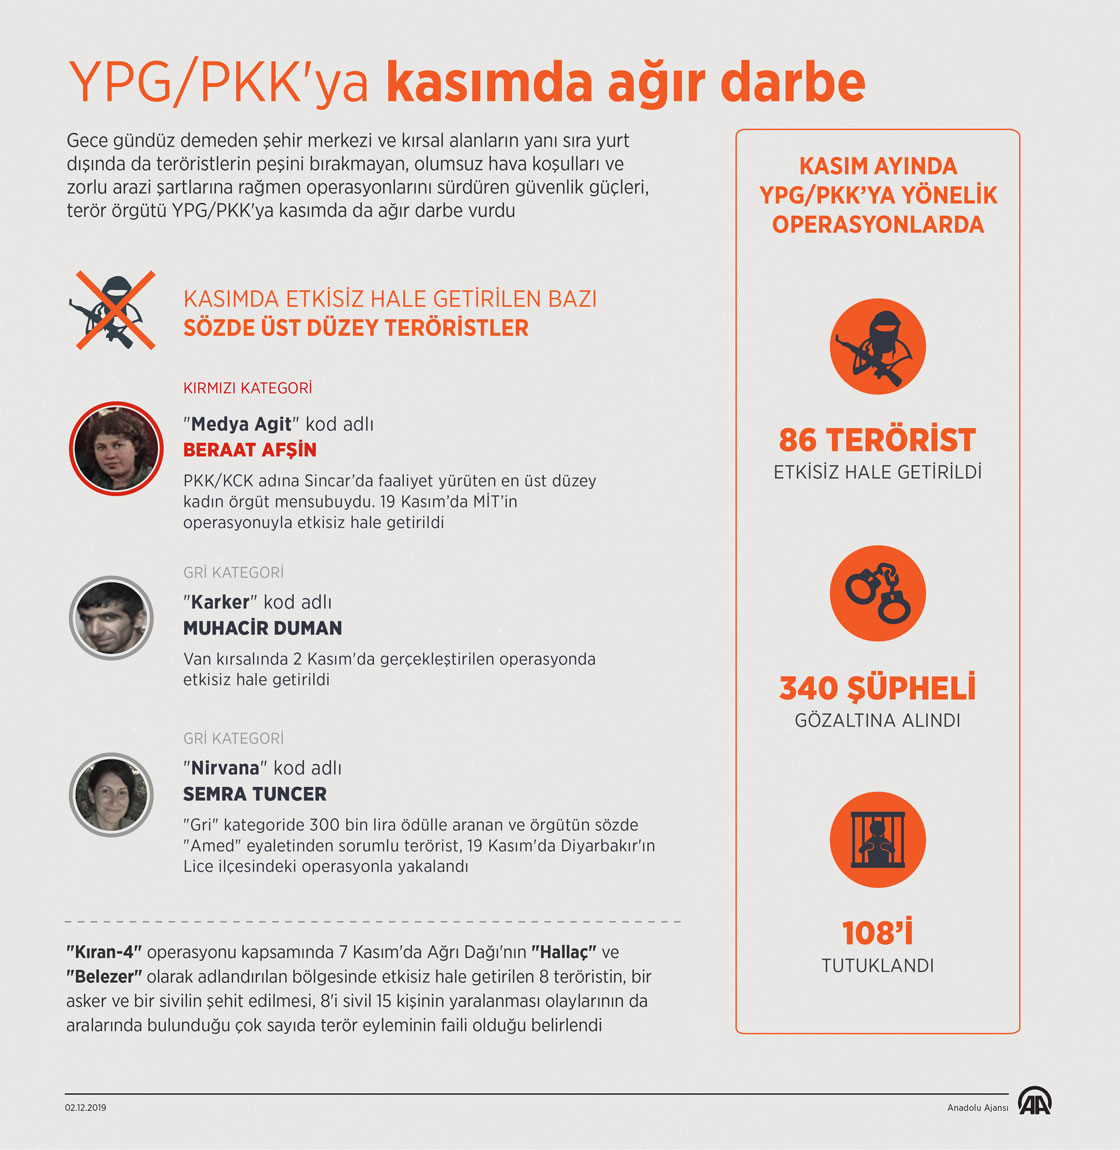  YPG/PKK'ya kasımda ağır darbe